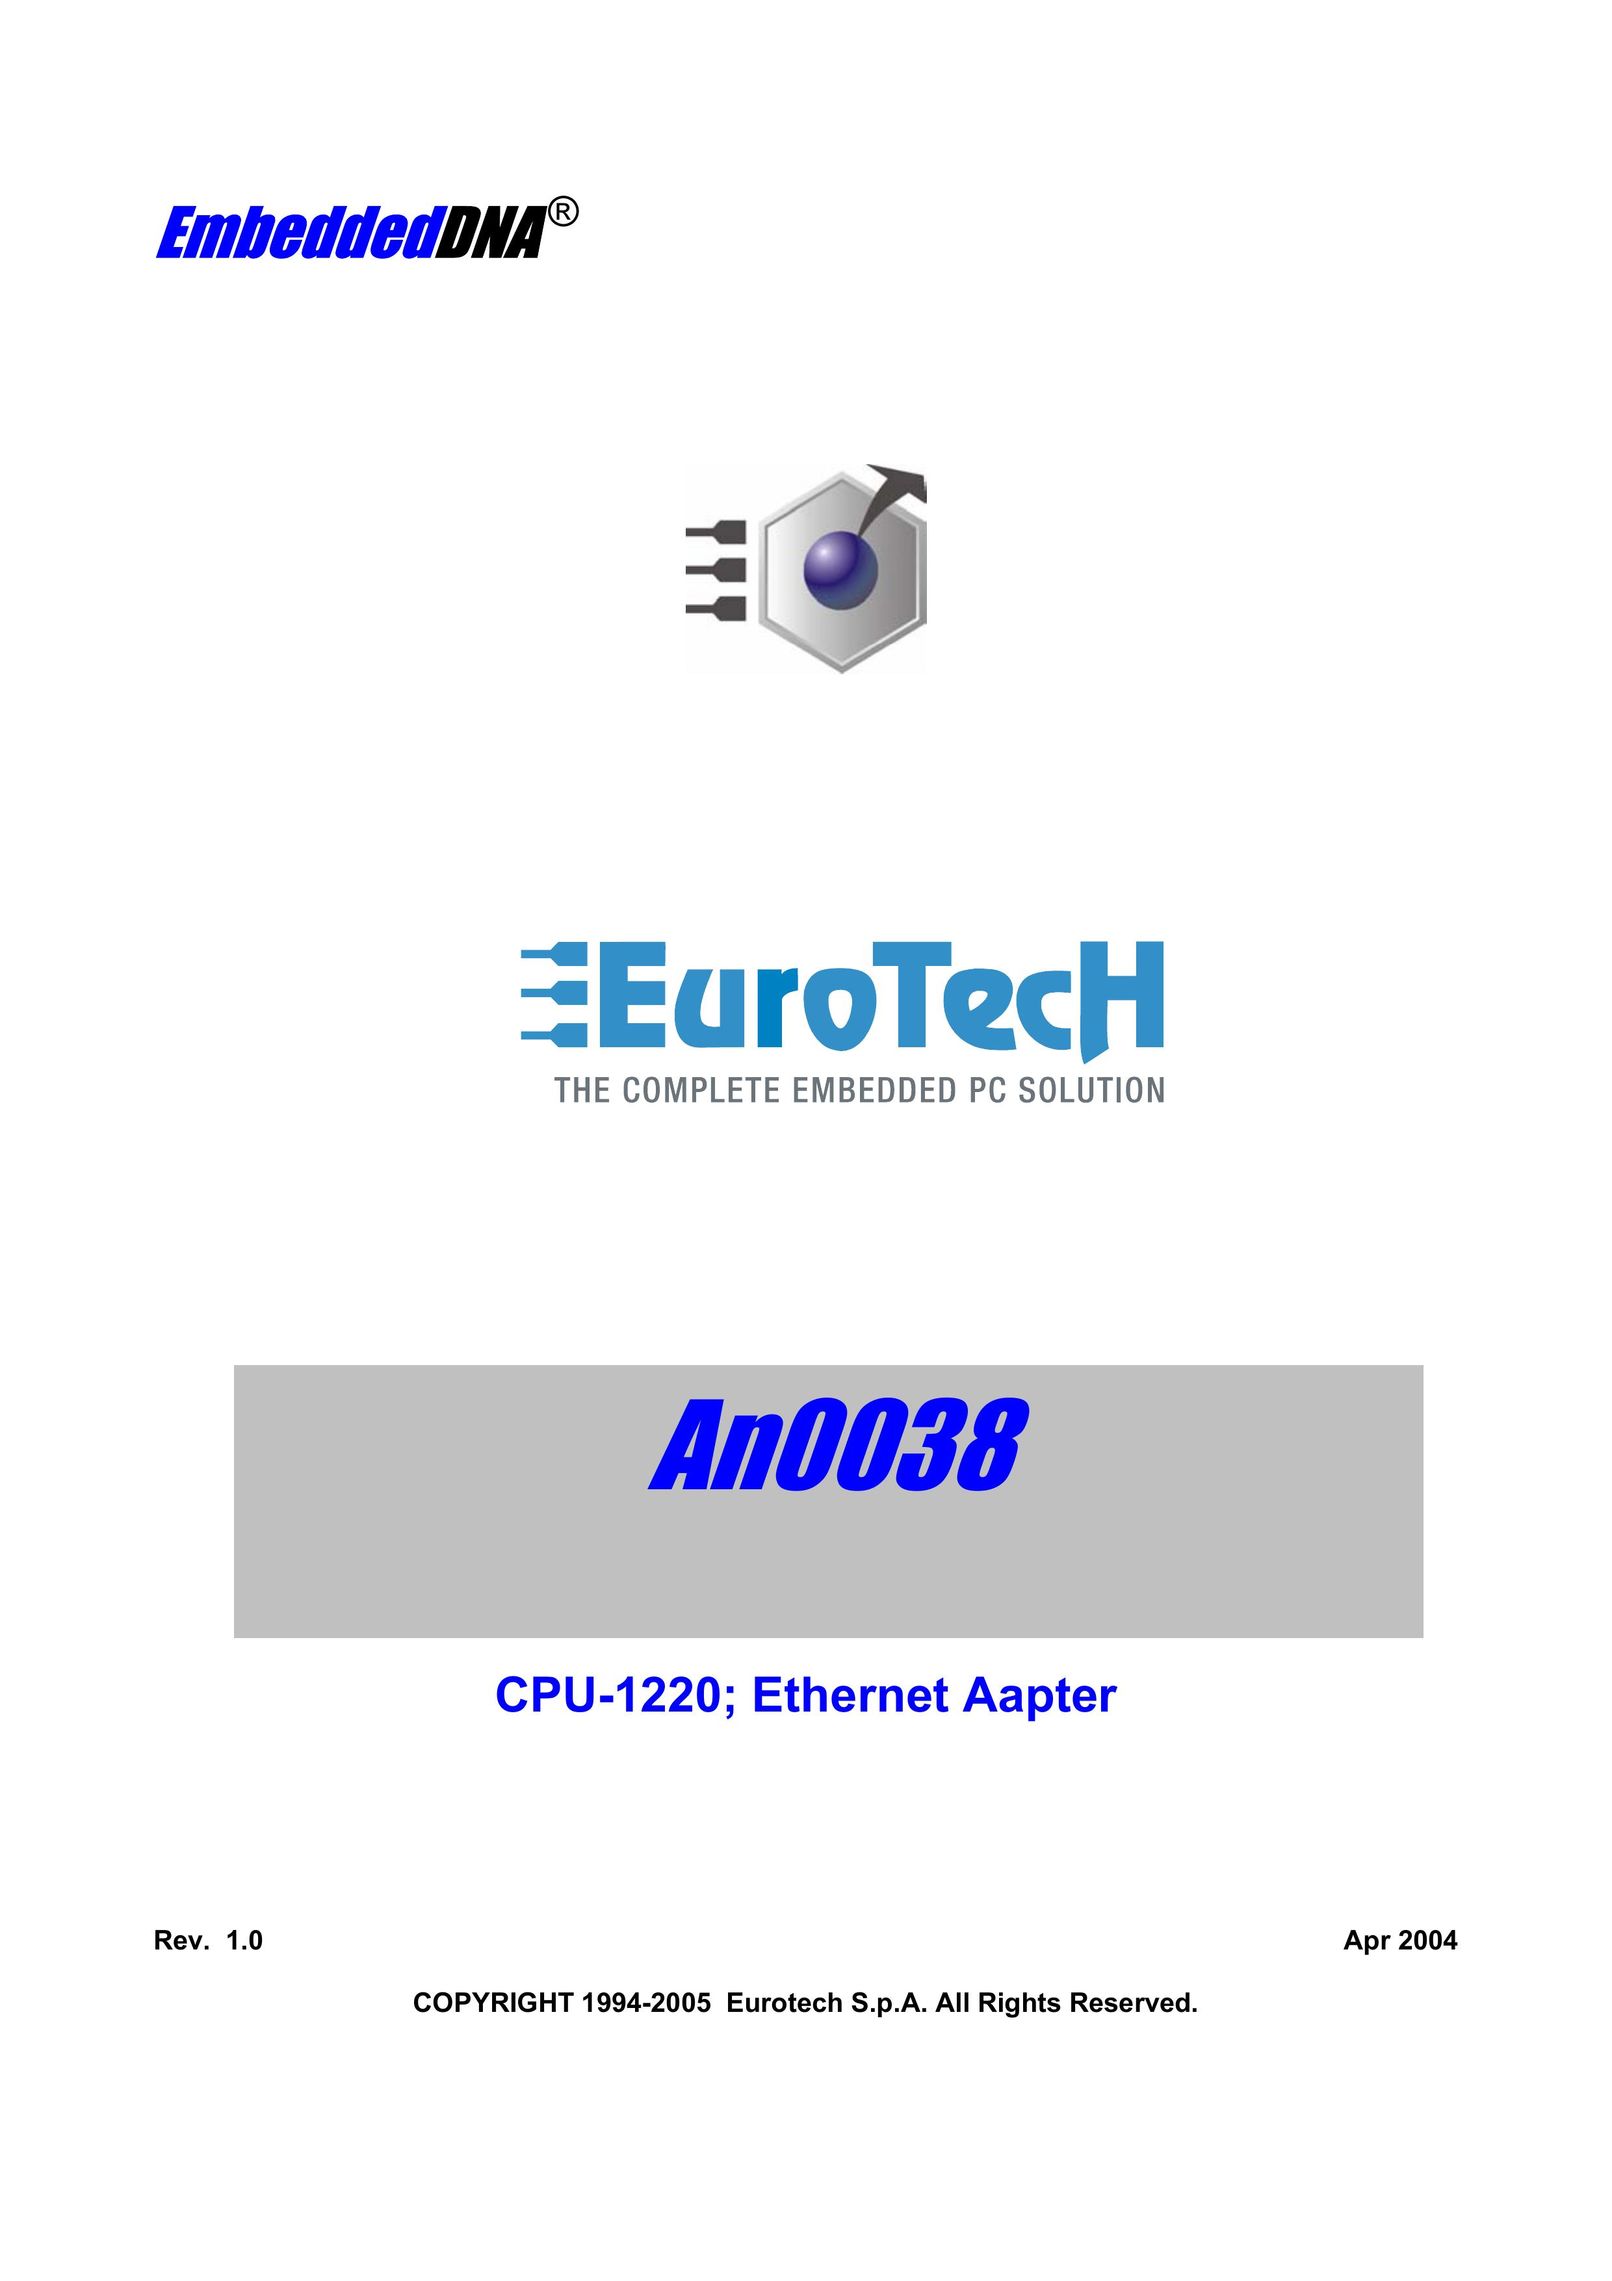 Eurotech Appliances An0038 Network Card User Manual